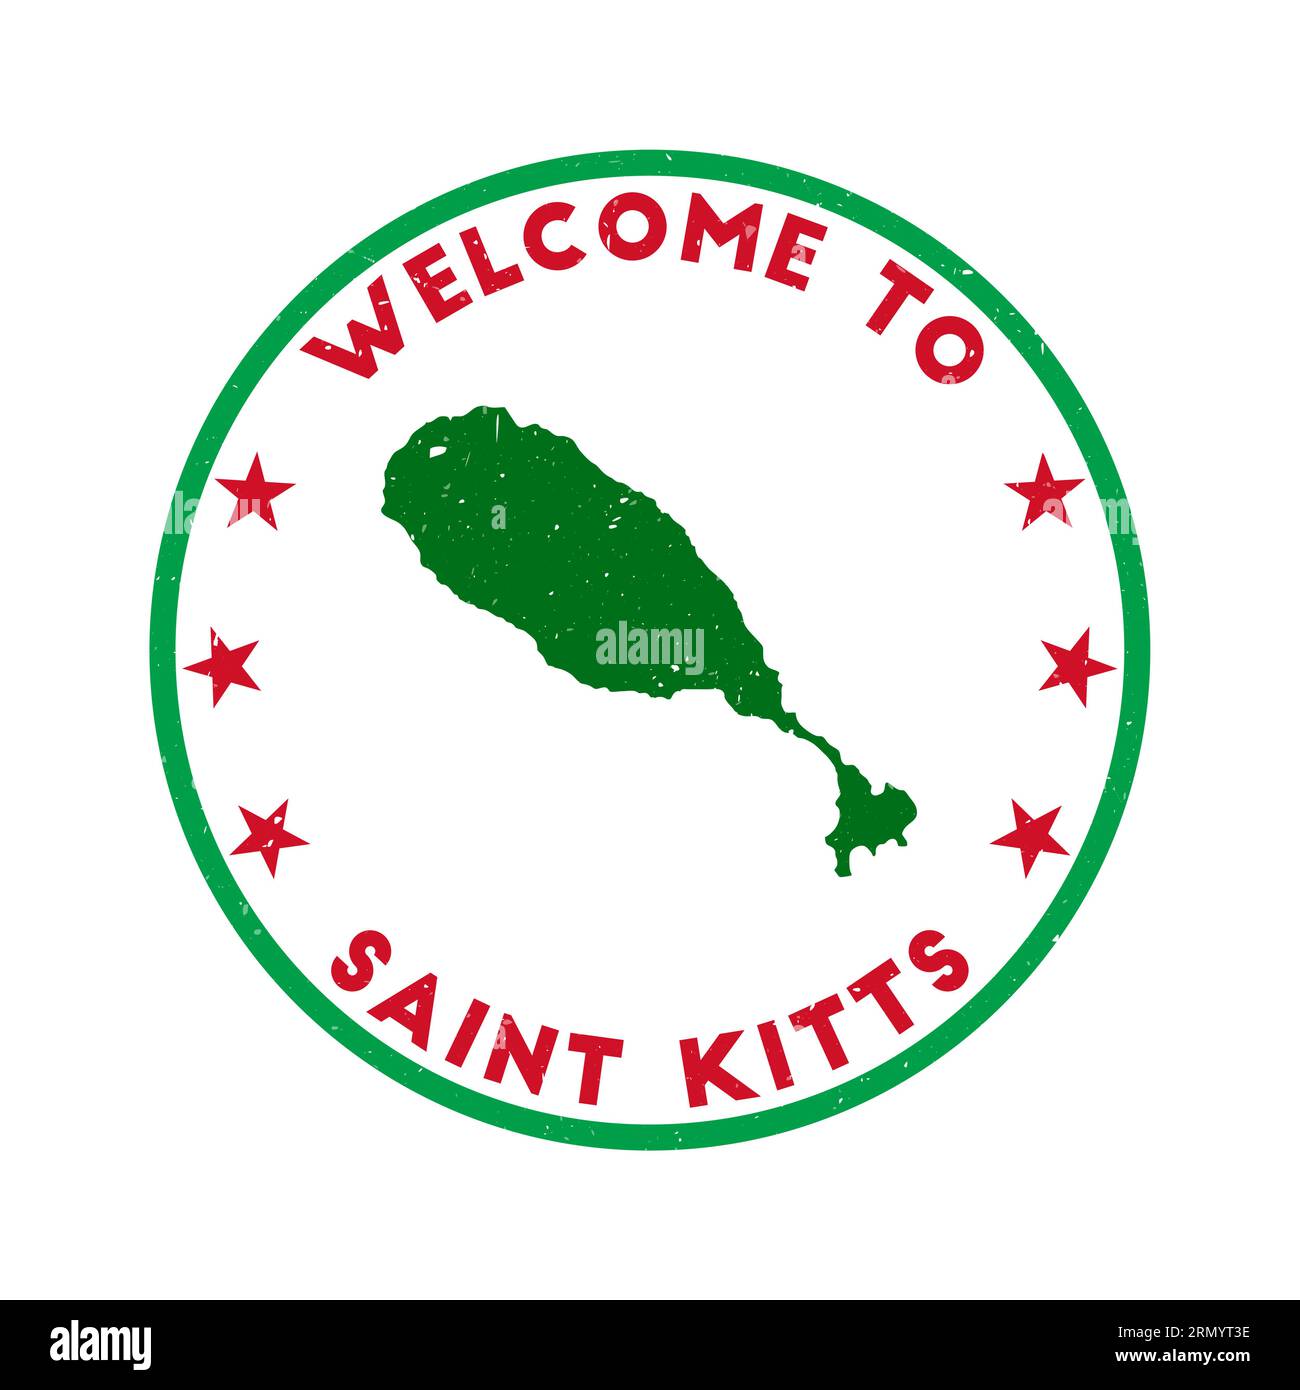 Willkommen bei Saint Kitts Stamp. Rundstempel mit Grunge-Insel und Textur in Super Rose Red. Geometrisches Saint Kitts-Siegel im Vintage-Stil. Erstaunlich Stock Vektor